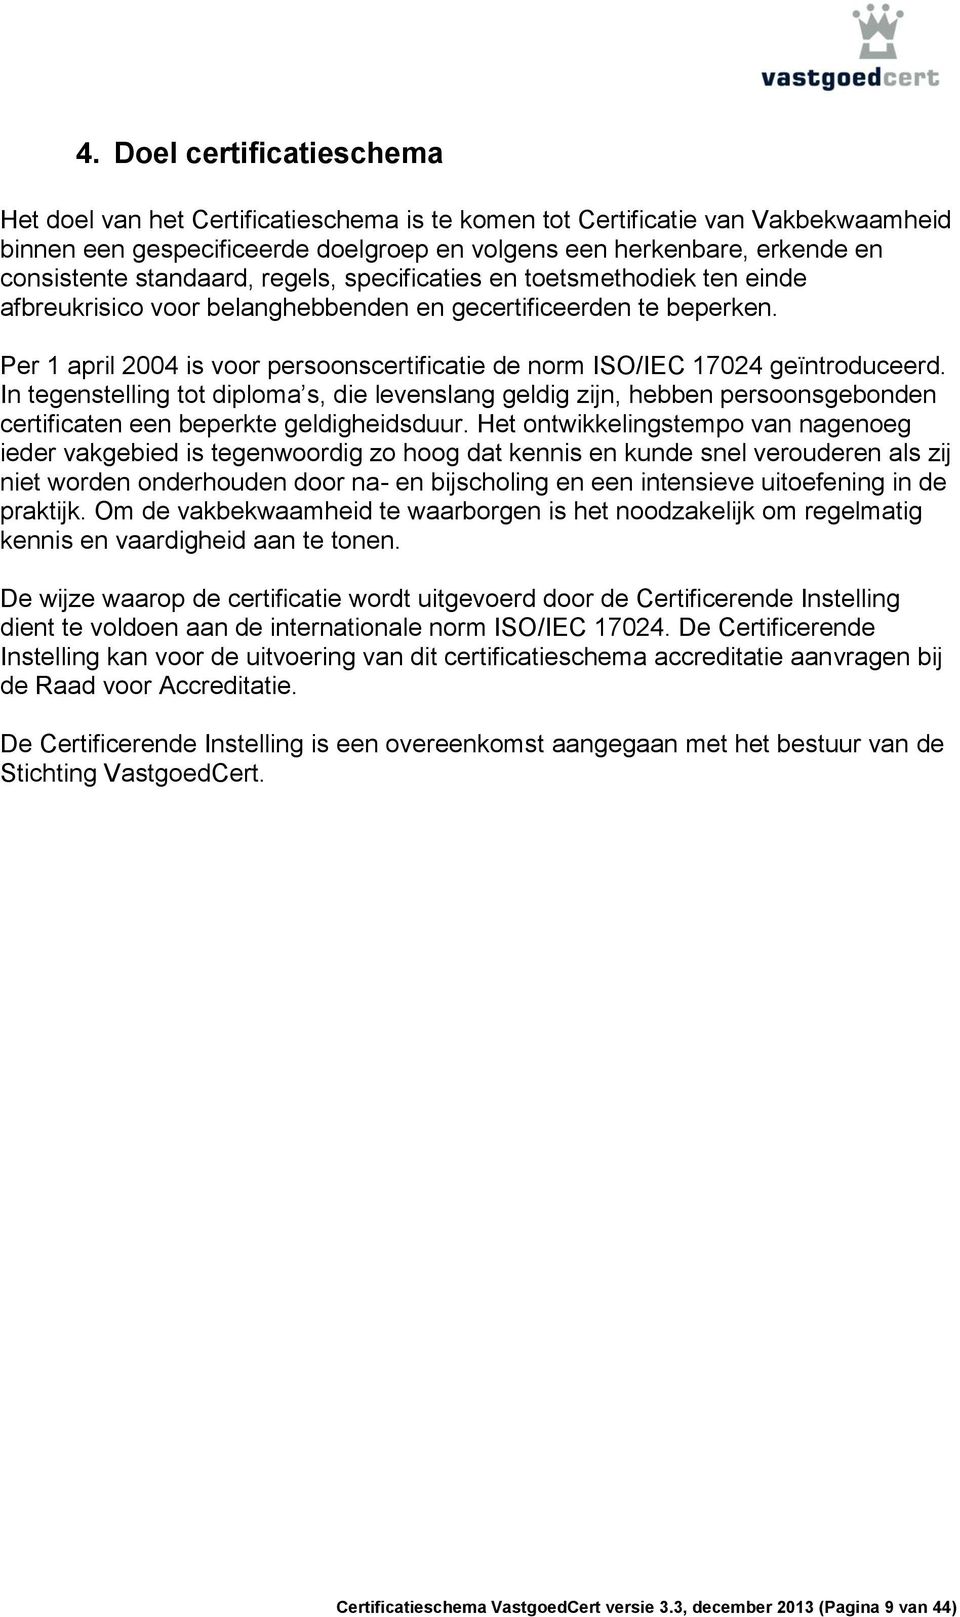 Per 1 april 2004 is voor persoonscertificatie de norm ISO/IEC 17024 geïntroduceerd.